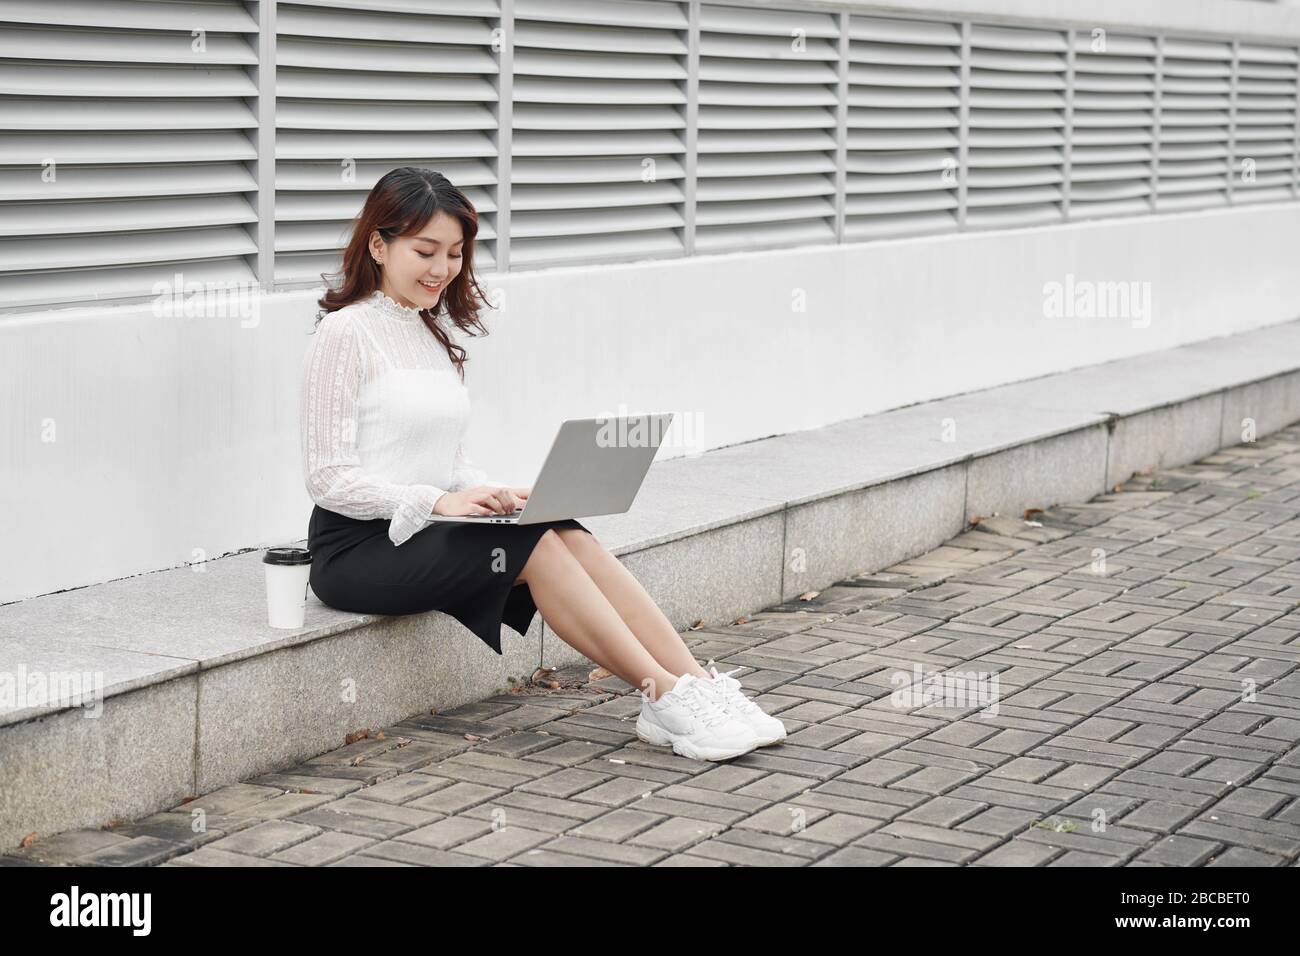 Une femme joyeuse qui utilise un ordinateur portable assis sur les traces Banque D'Images